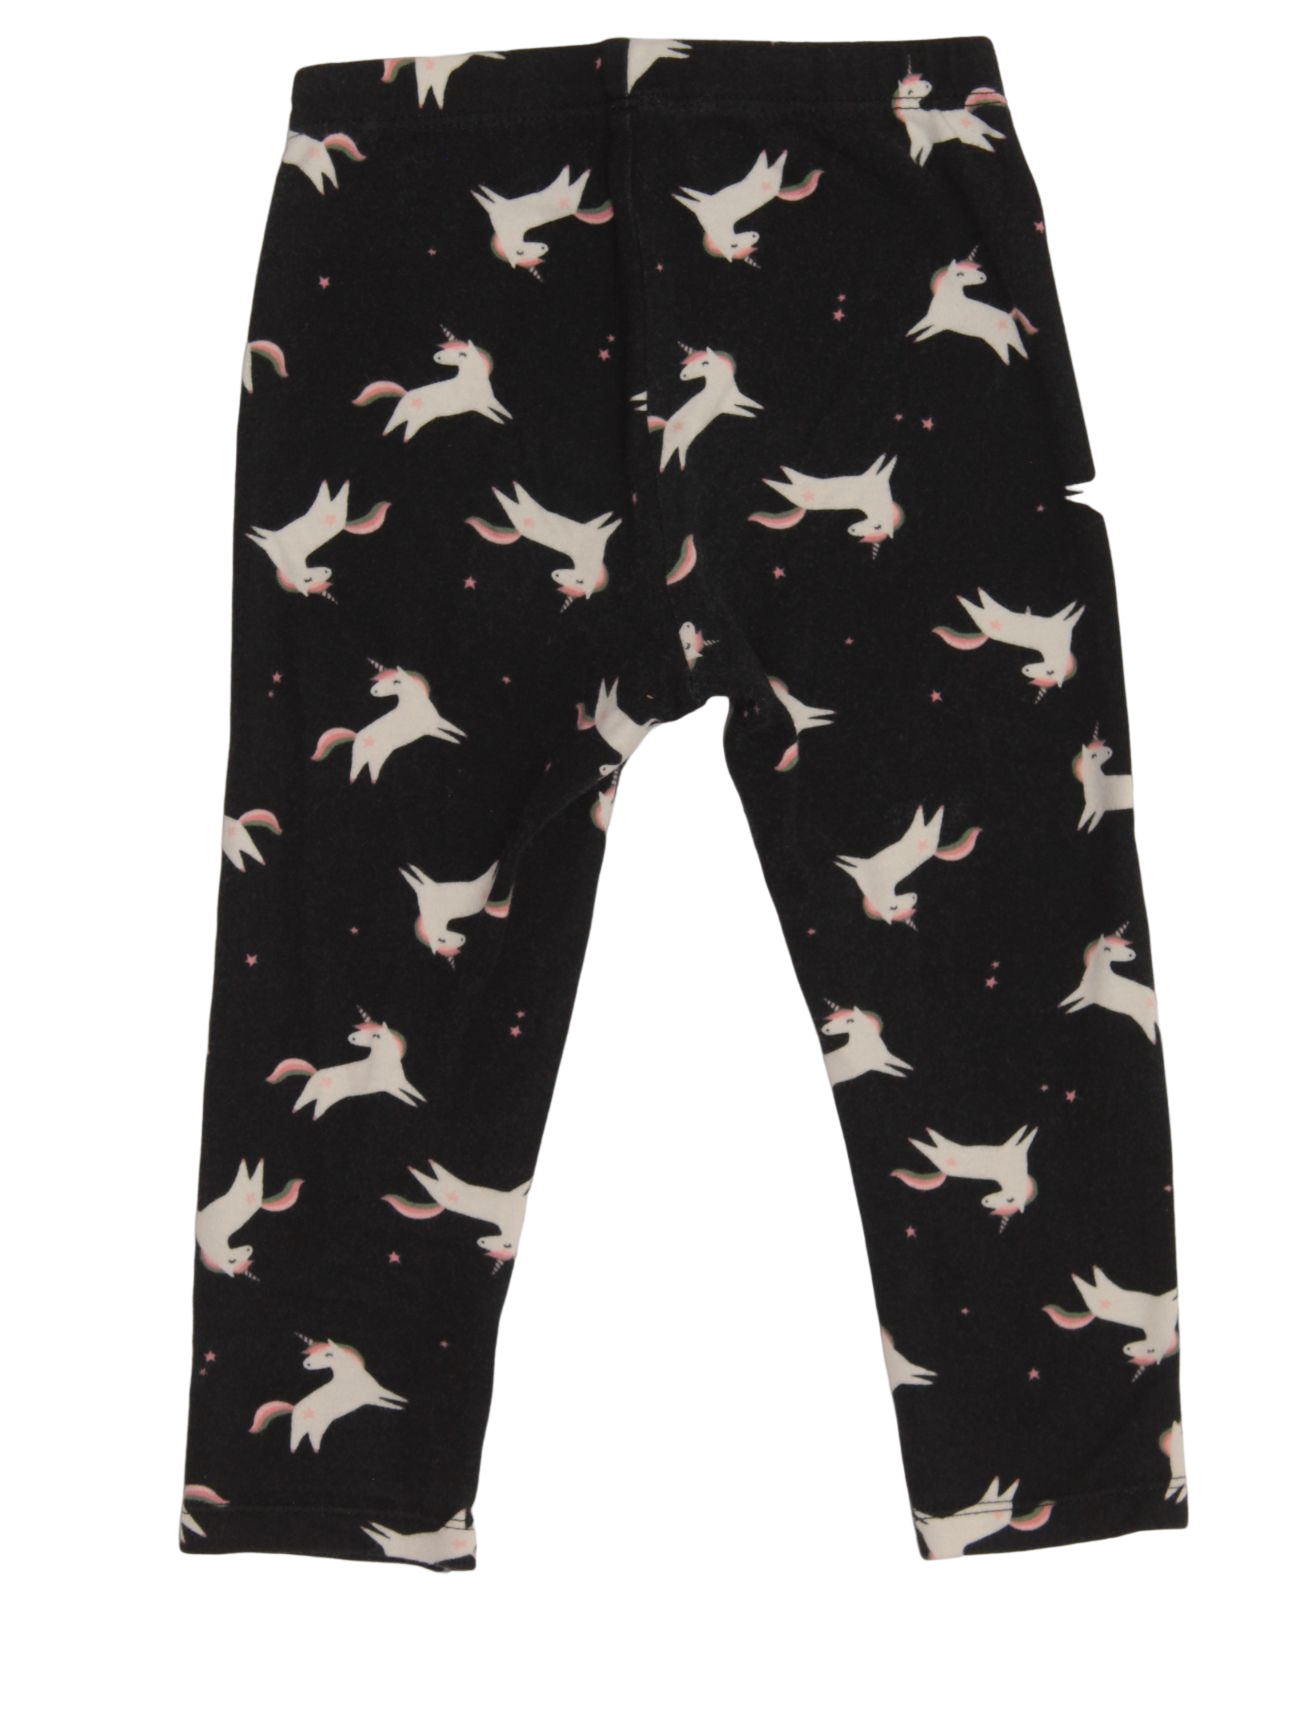 Pantalón negro con estampado de unicornios 24 meses